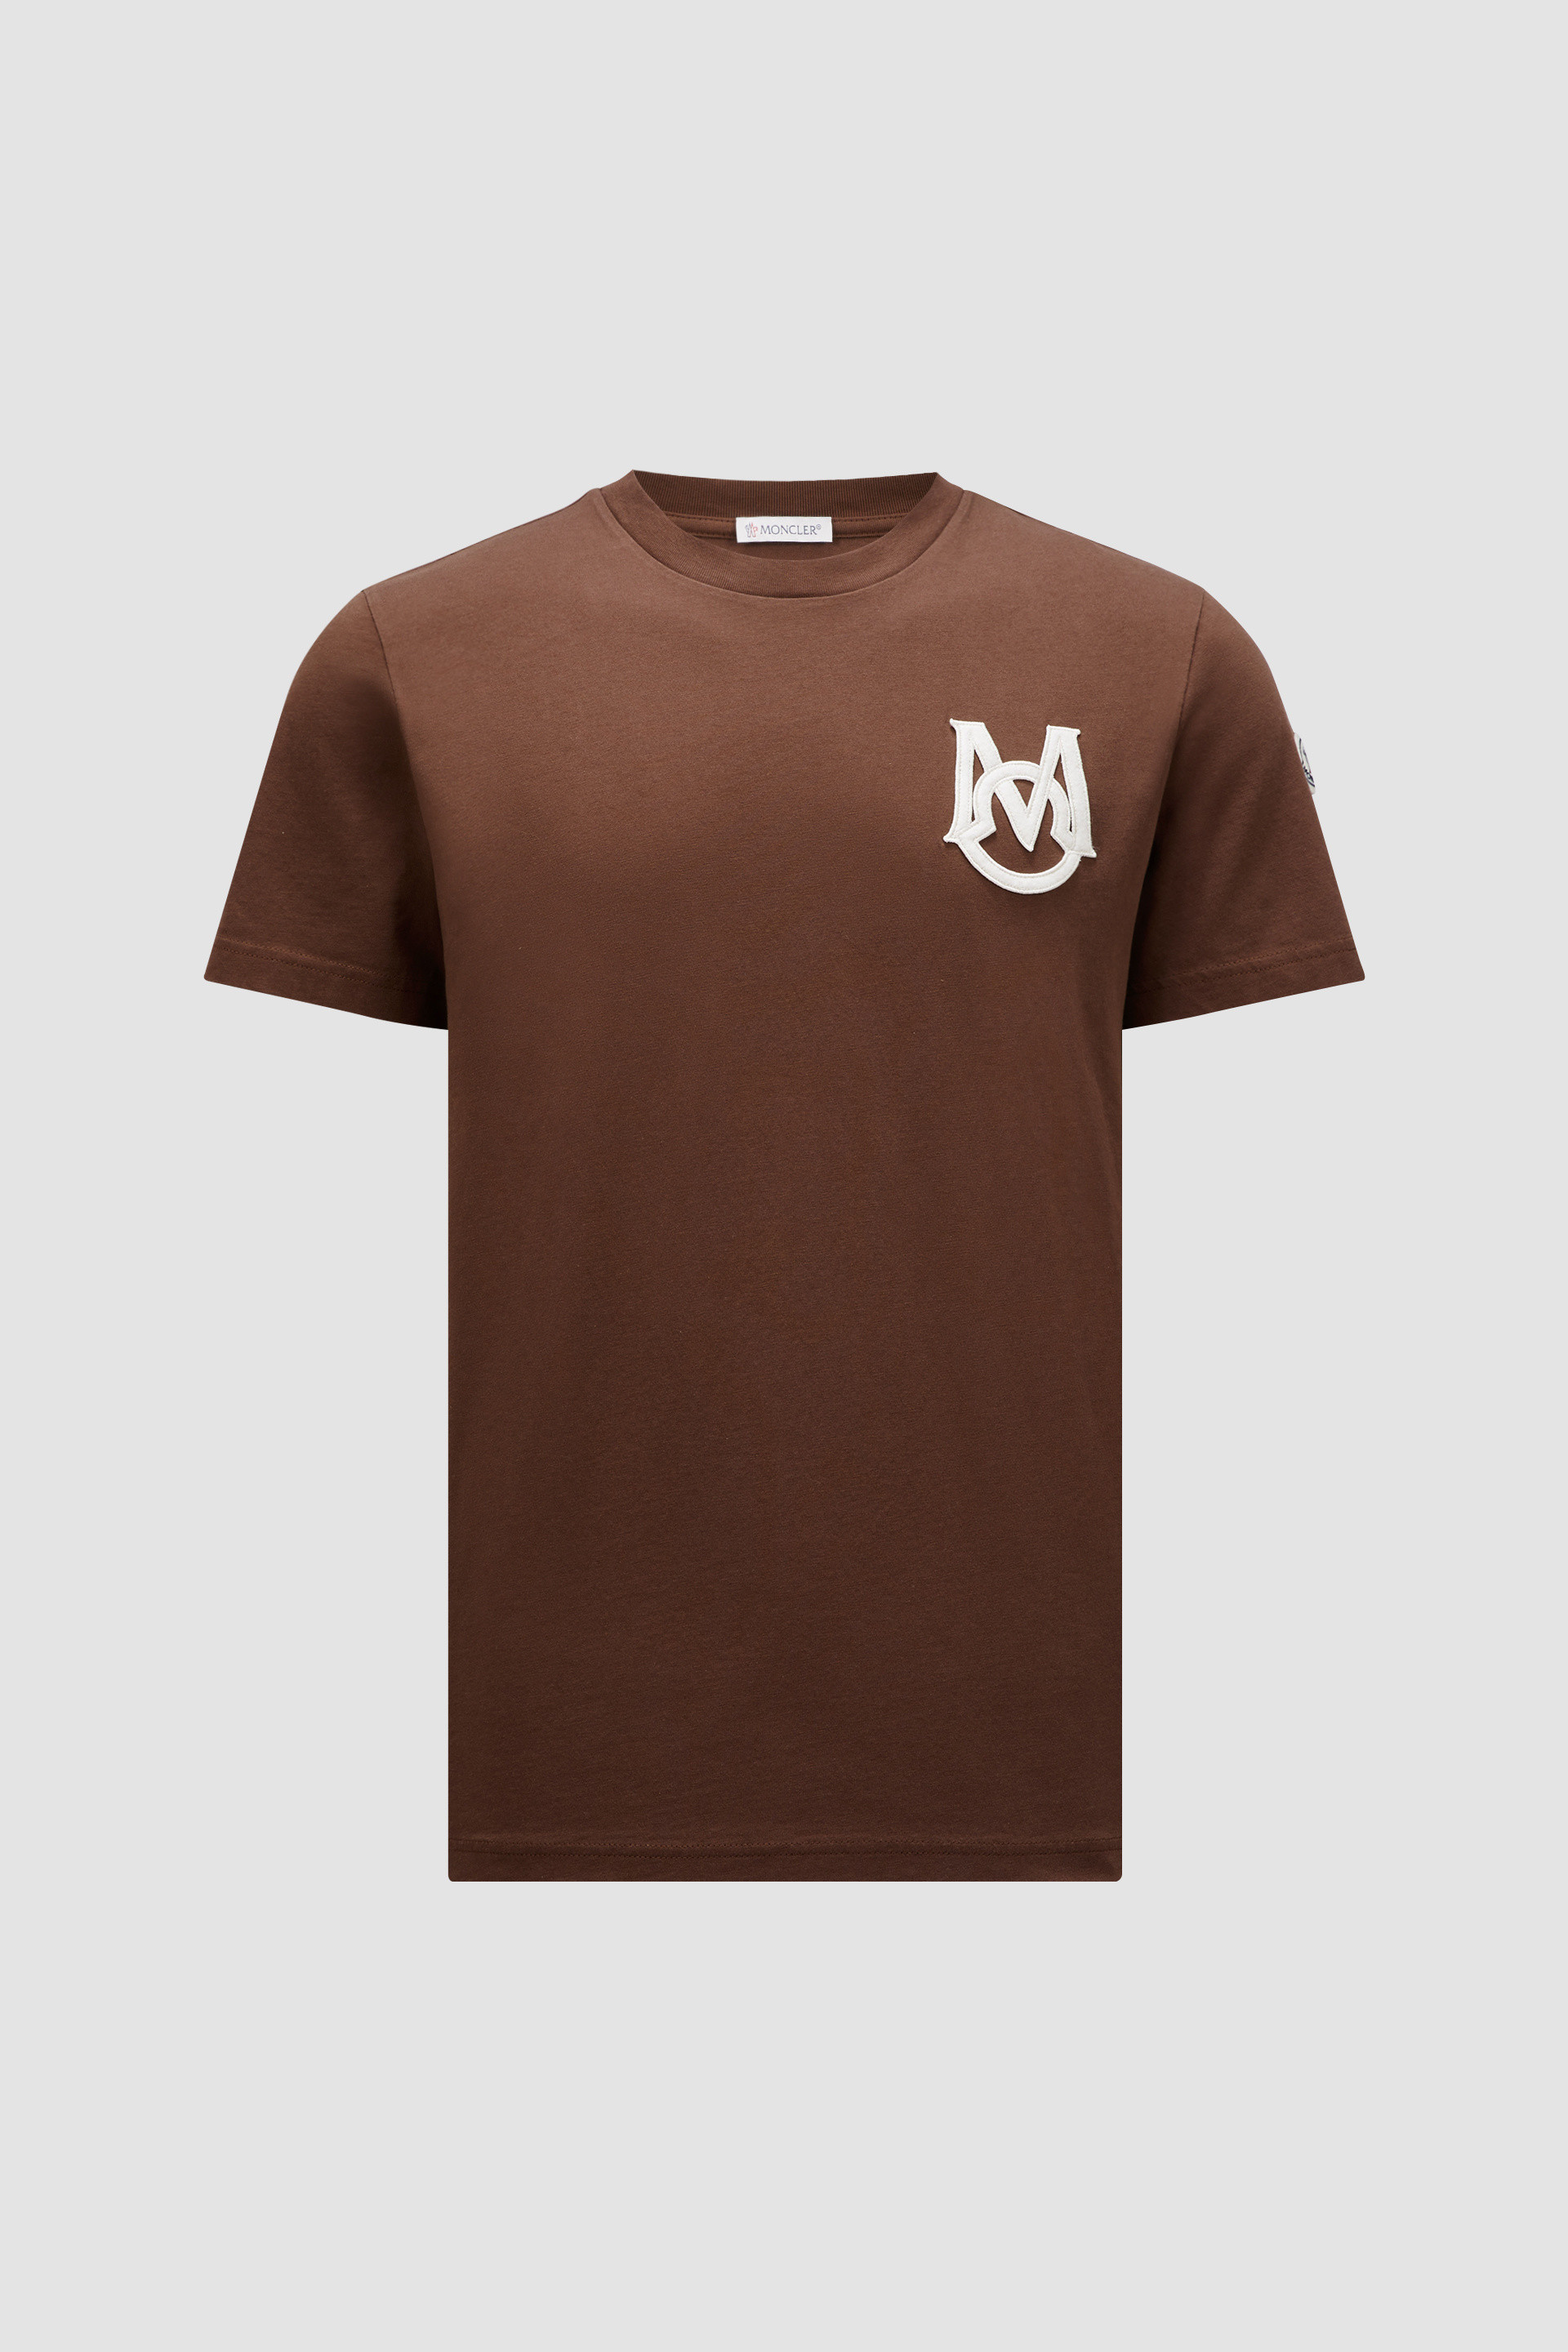 ブラウン Tシャツ : Tシャツ＆ポロシャツ 向けの メンズ | モンクレール